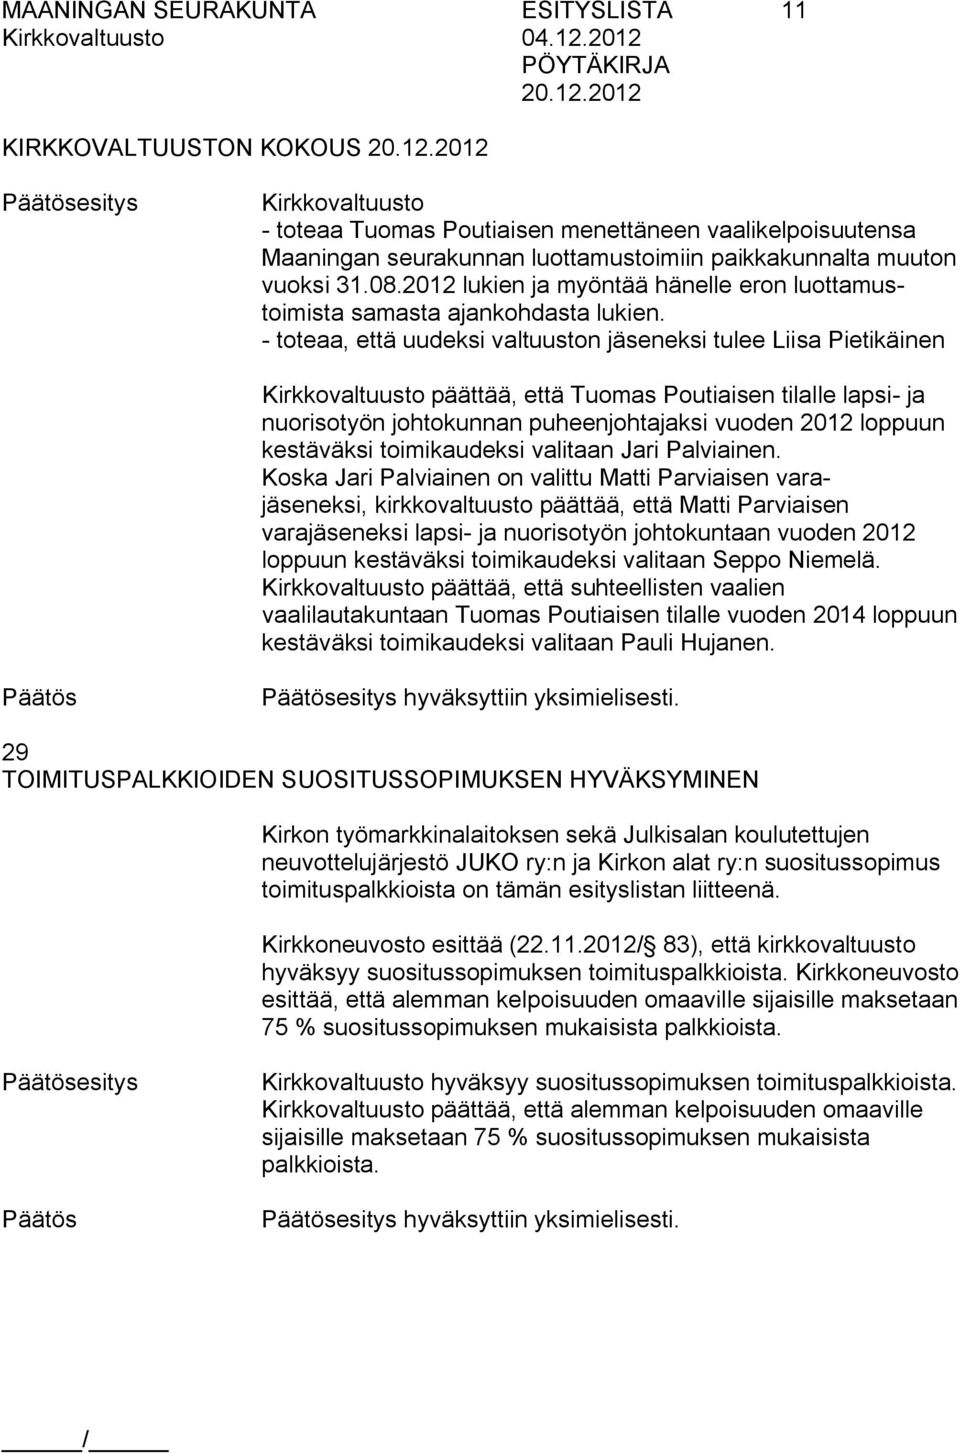 toteaa, että uudeksi valtuuston eksi tulee Liisa Pietikäinen Kirkkovaltuusto päättää, että Tuomas Poutiaisen tilalle lapsi ja nuorisotyön johtokunnan puheenjohtajaksi vuoden 2012 loppuun kestäväksi